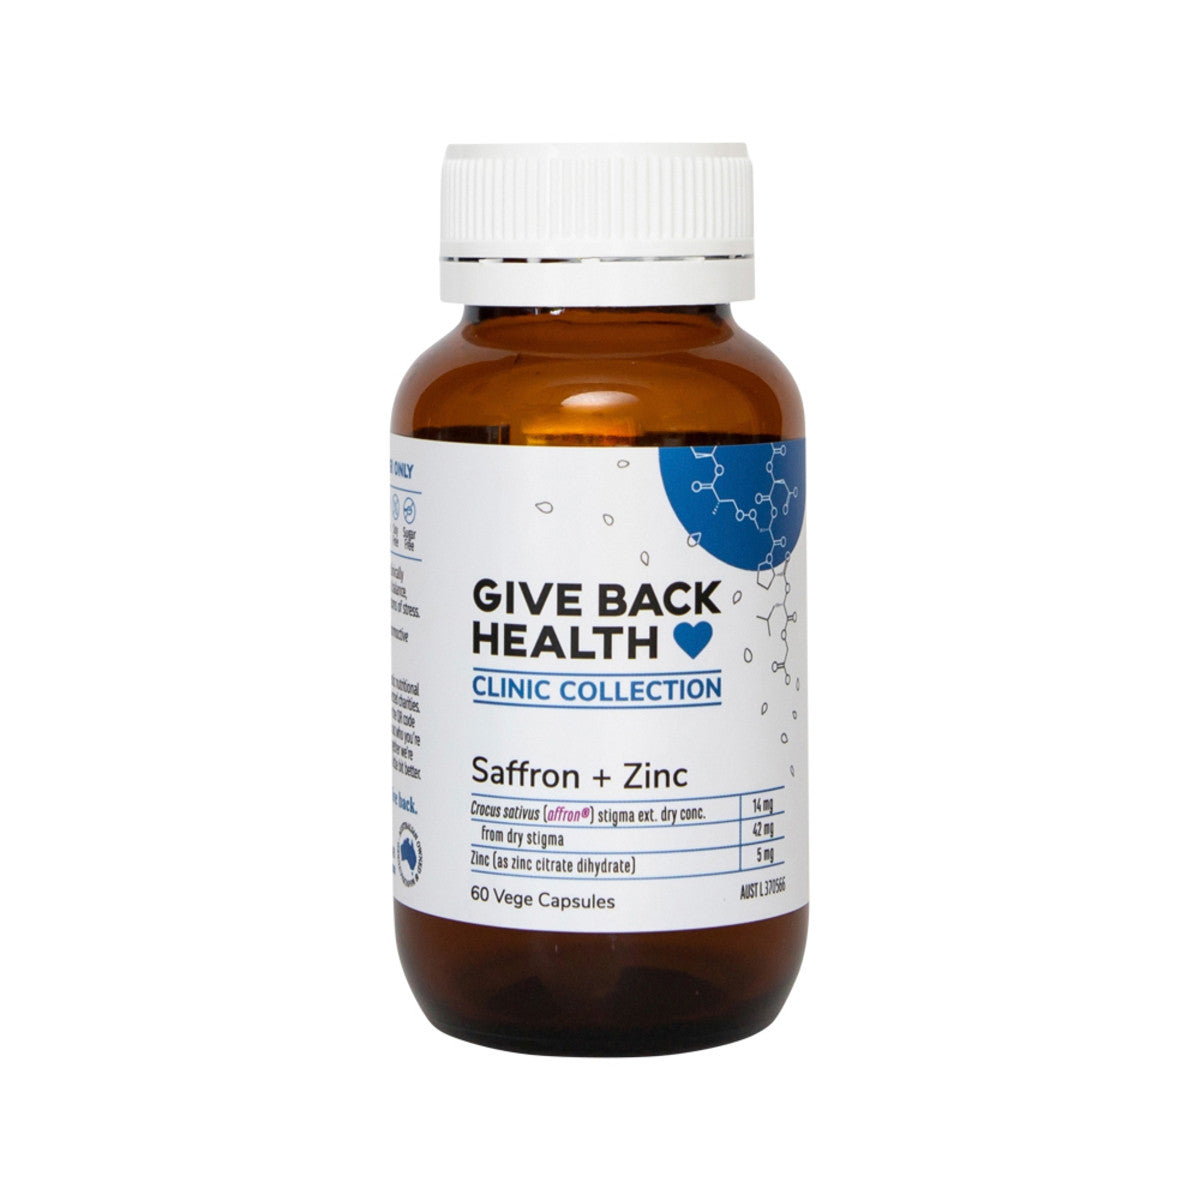 Saffron + Zinc - Give Back Health Clinic Collection